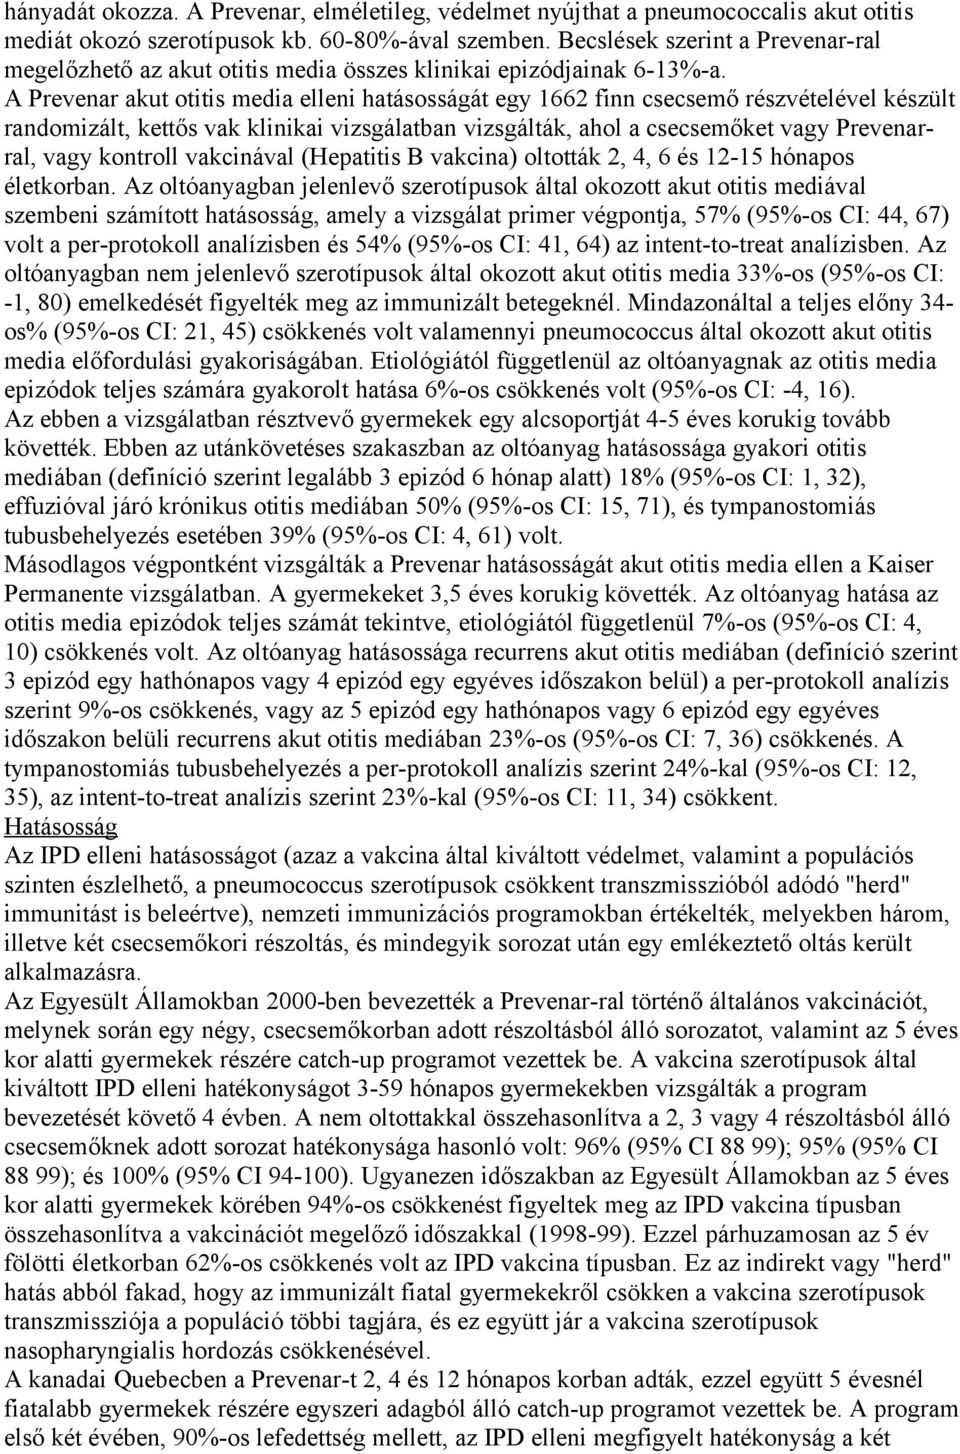 A Prevenar akut otitis media elleni hatásosságát egy 1662 finn csecsemő részvételével készült randomizált, kettős vak klinikai vizsgálatban vizsgálták, ahol a csecsemőket vagy Prevenarral, vagy